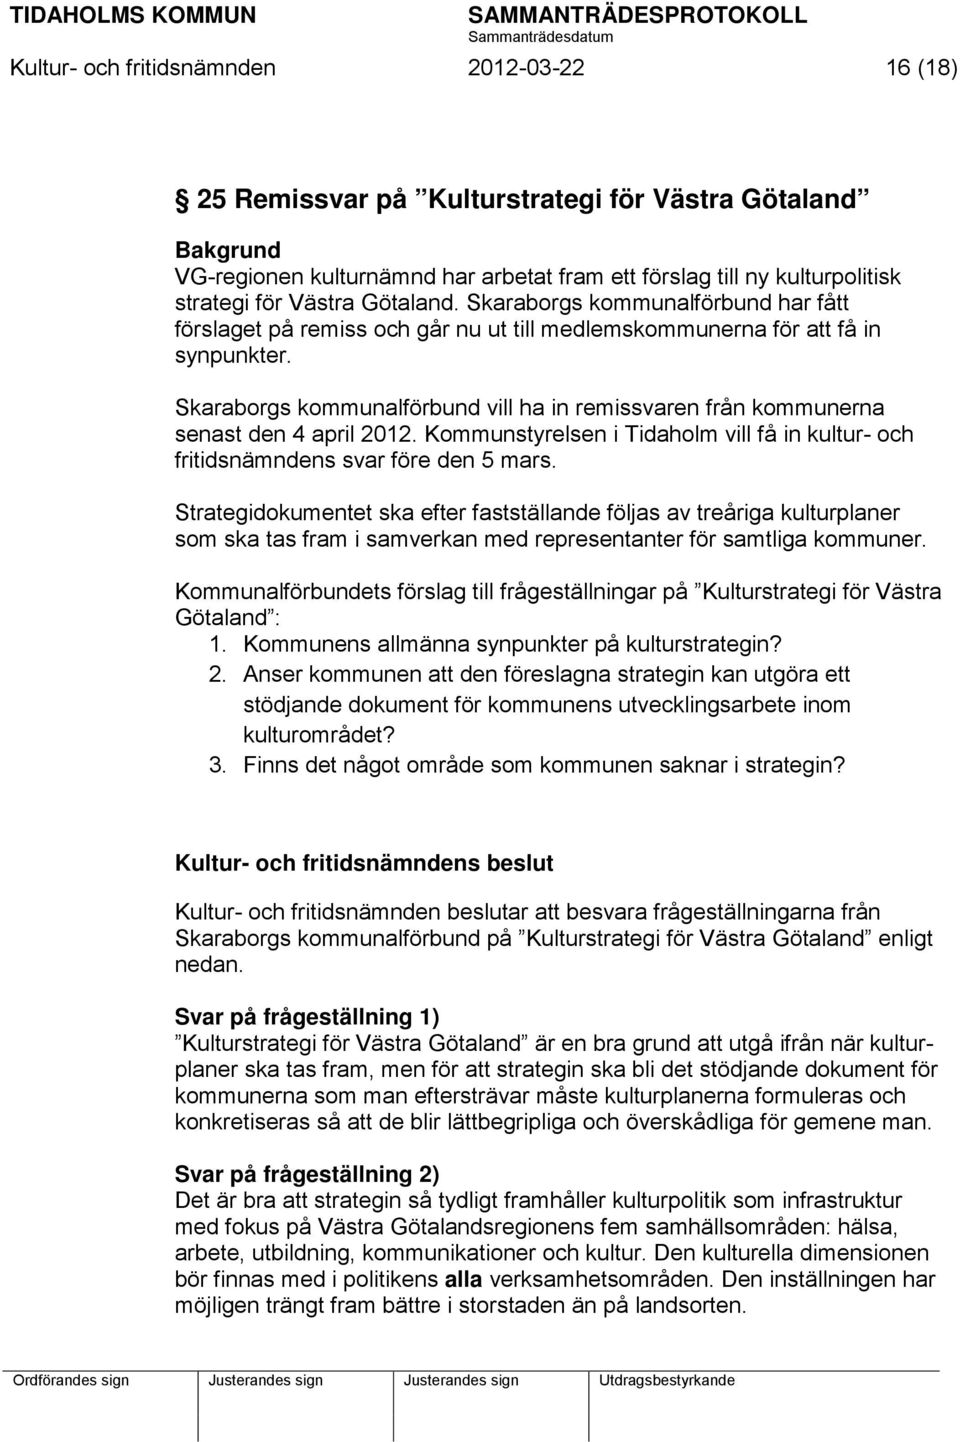 Skaraborgs kommunalförbund vill ha in remissvaren från kommunerna senast den 4 april 2012. Kommunstyrelsen i Tidaholm vill få in kultur- och fritidsnämndens svar före den 5 mars.